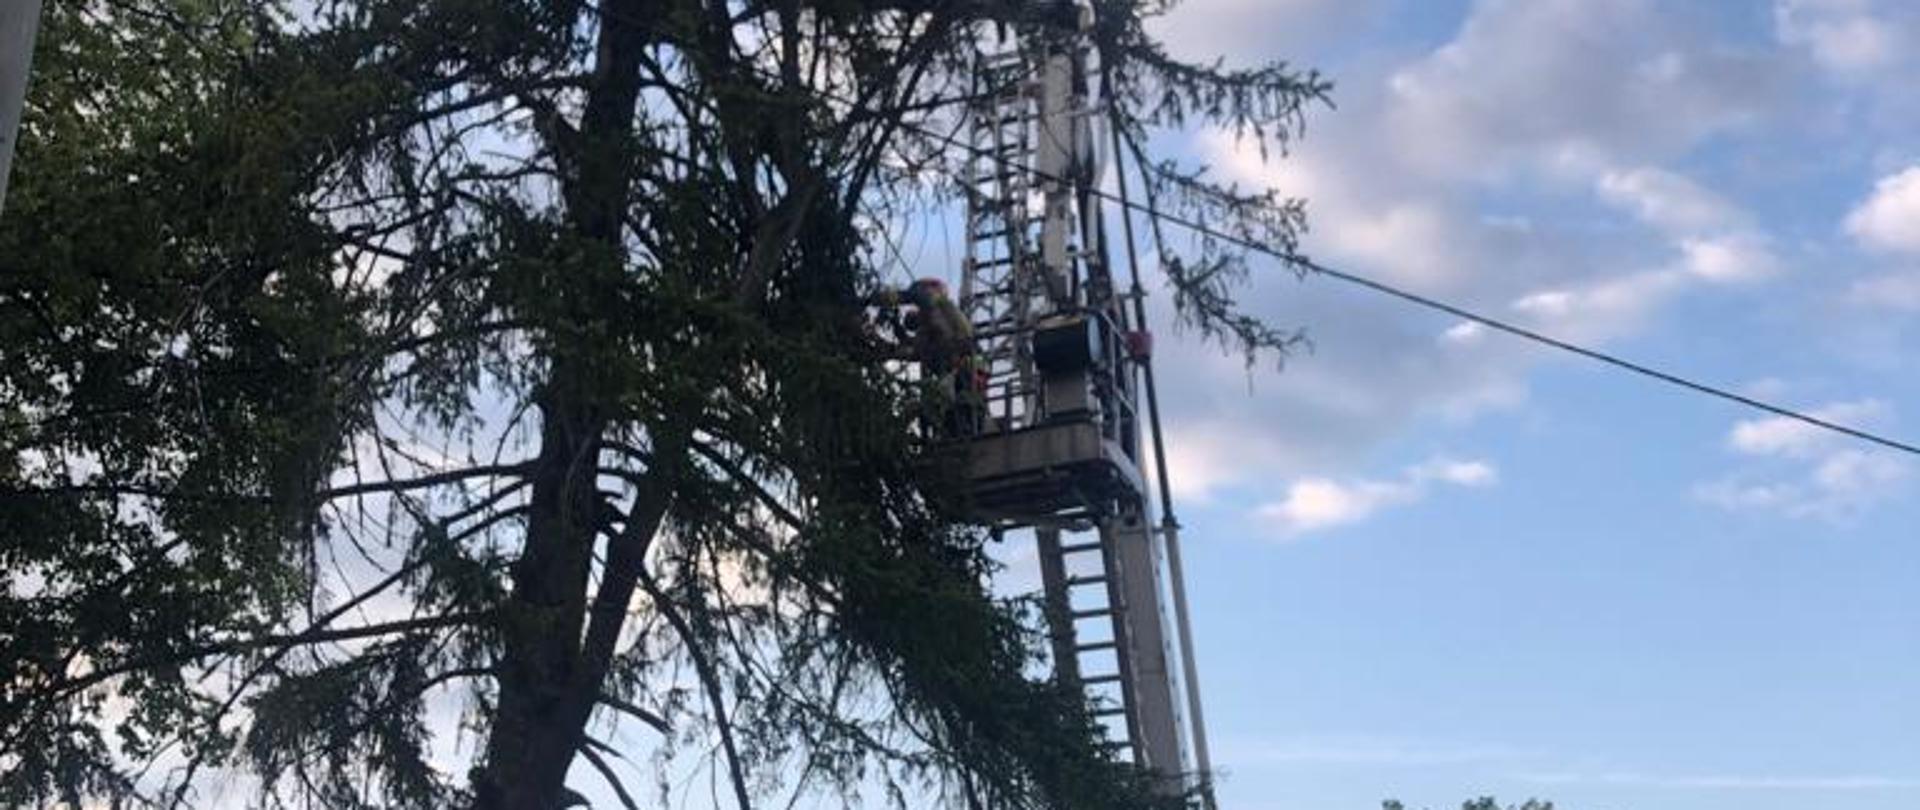 Na zdjęciu widać rozstawiony przy drzewie podnośnik SH-25 i strażaków w koszu podnośnika usuwających na wysokości złamany pień drzewa